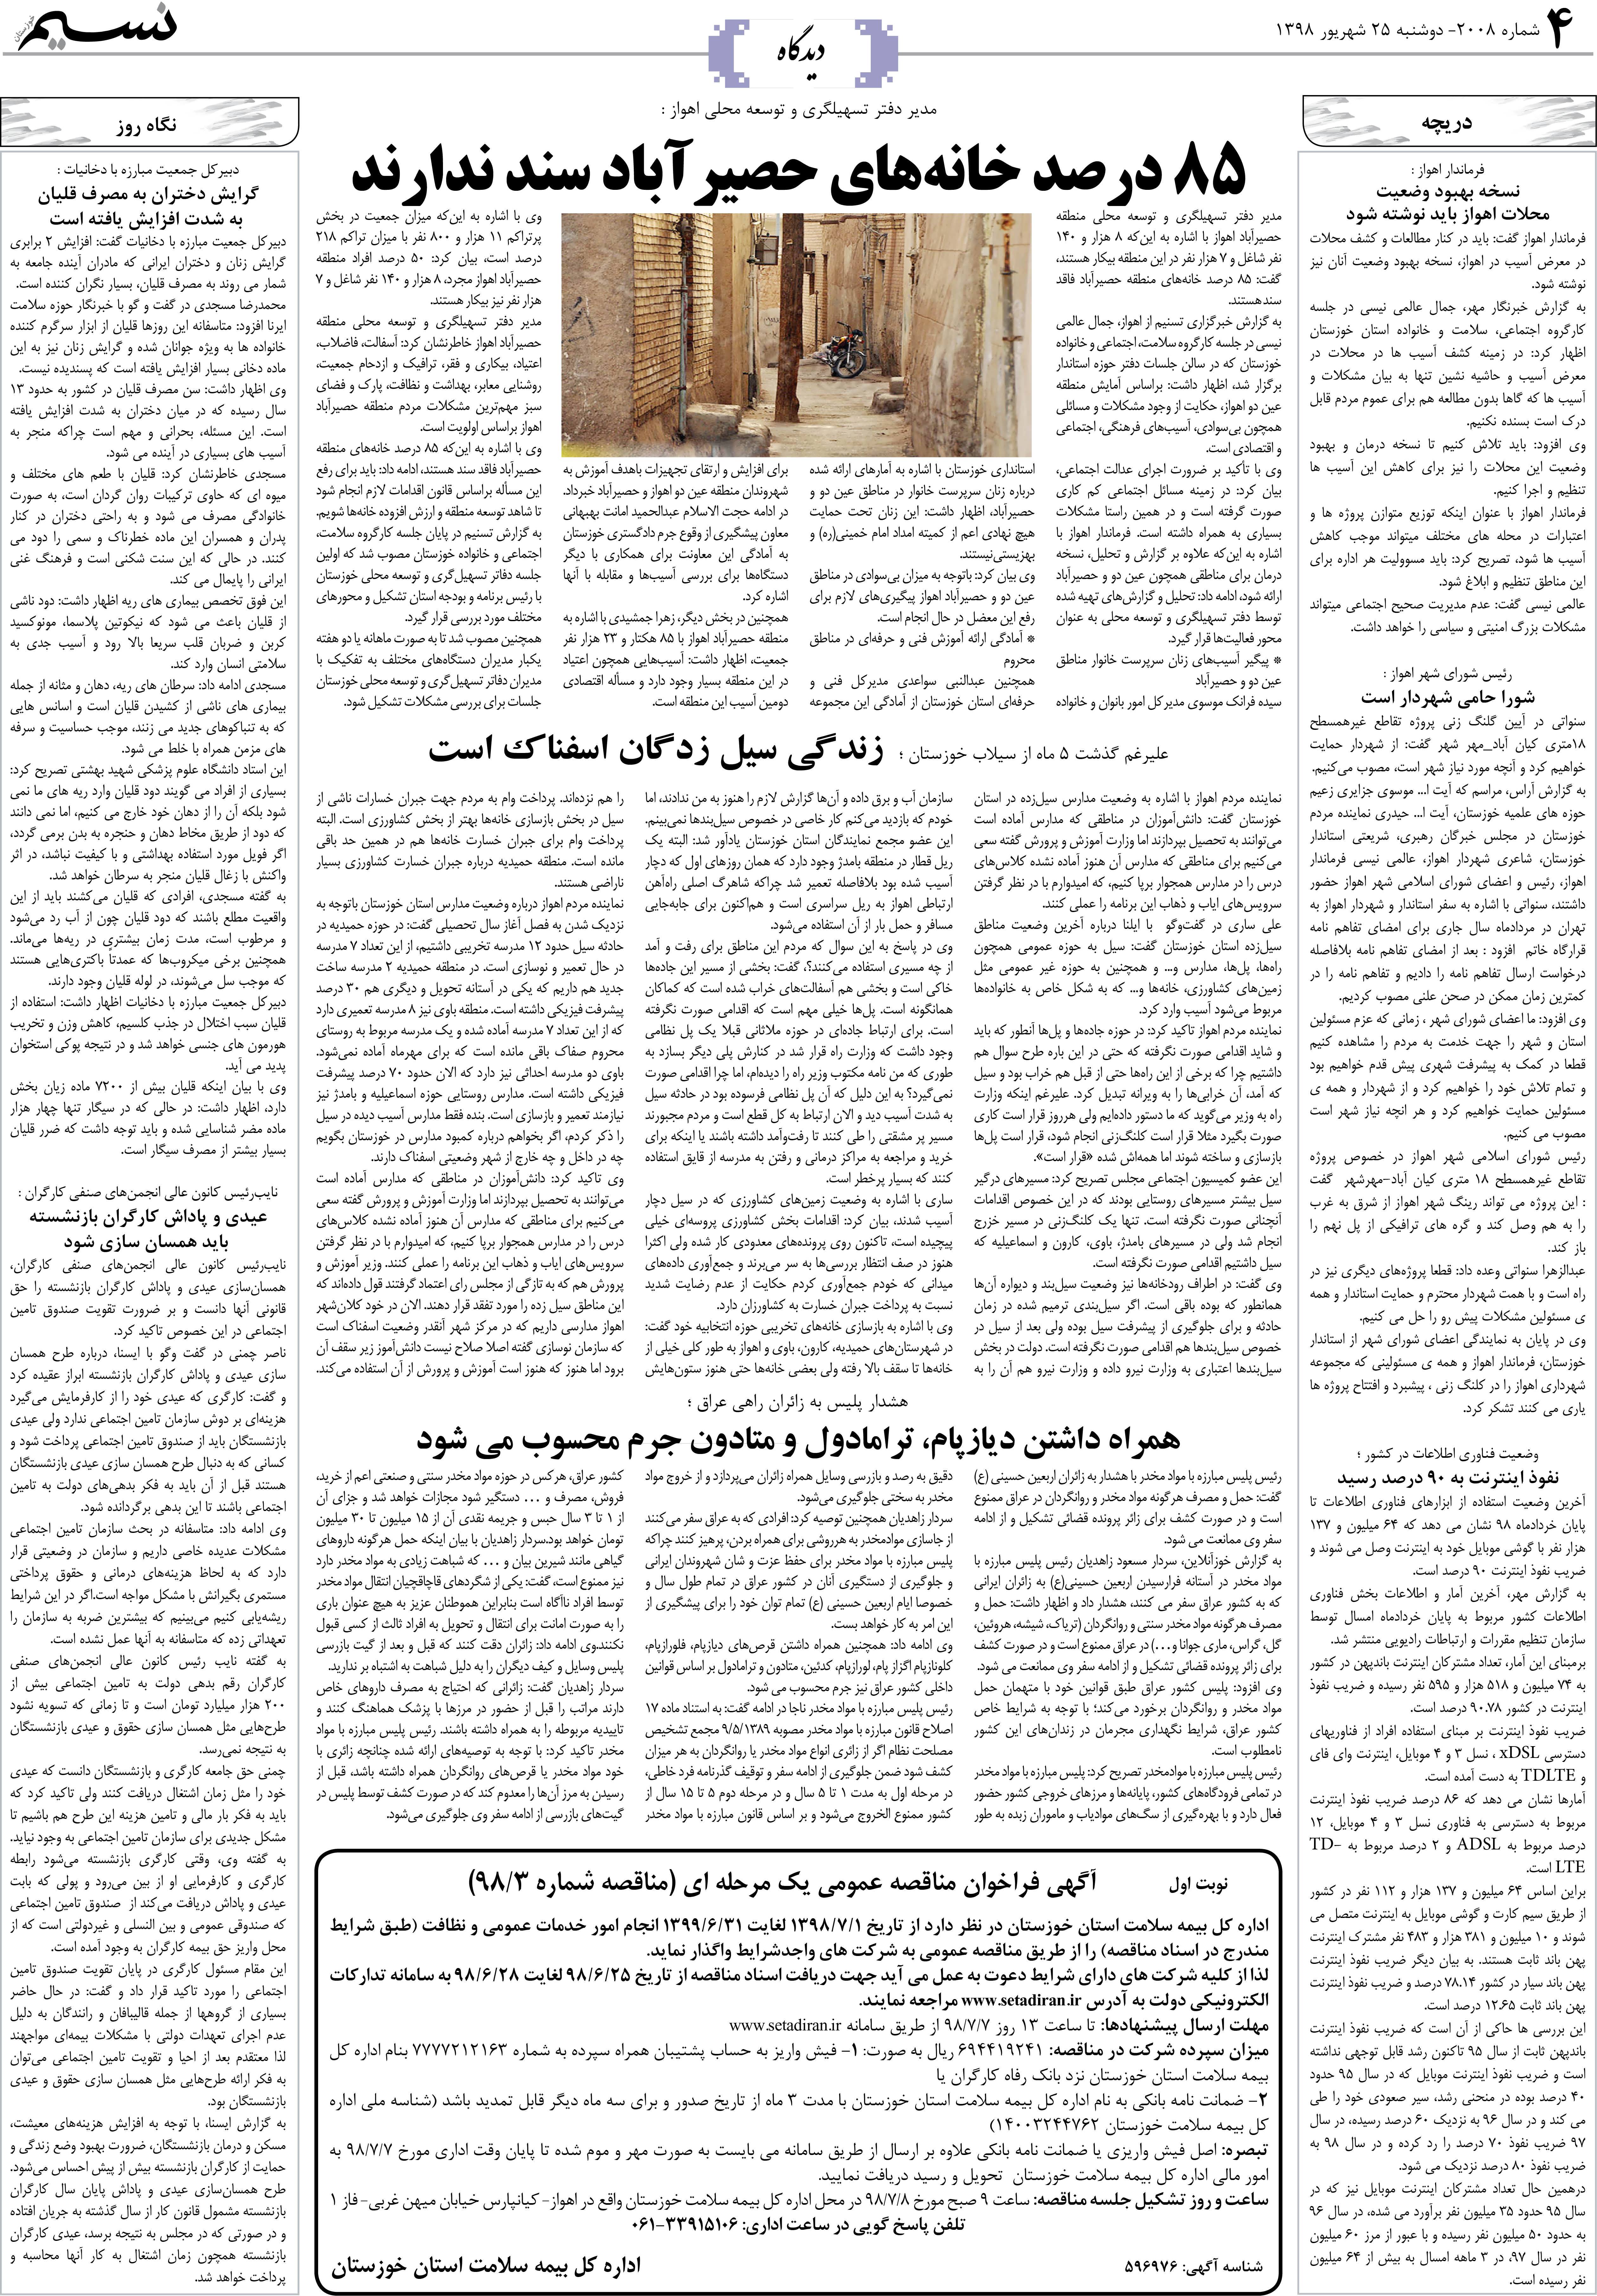 صفحه دیدگاه روزنامه نسیم شماره 2008